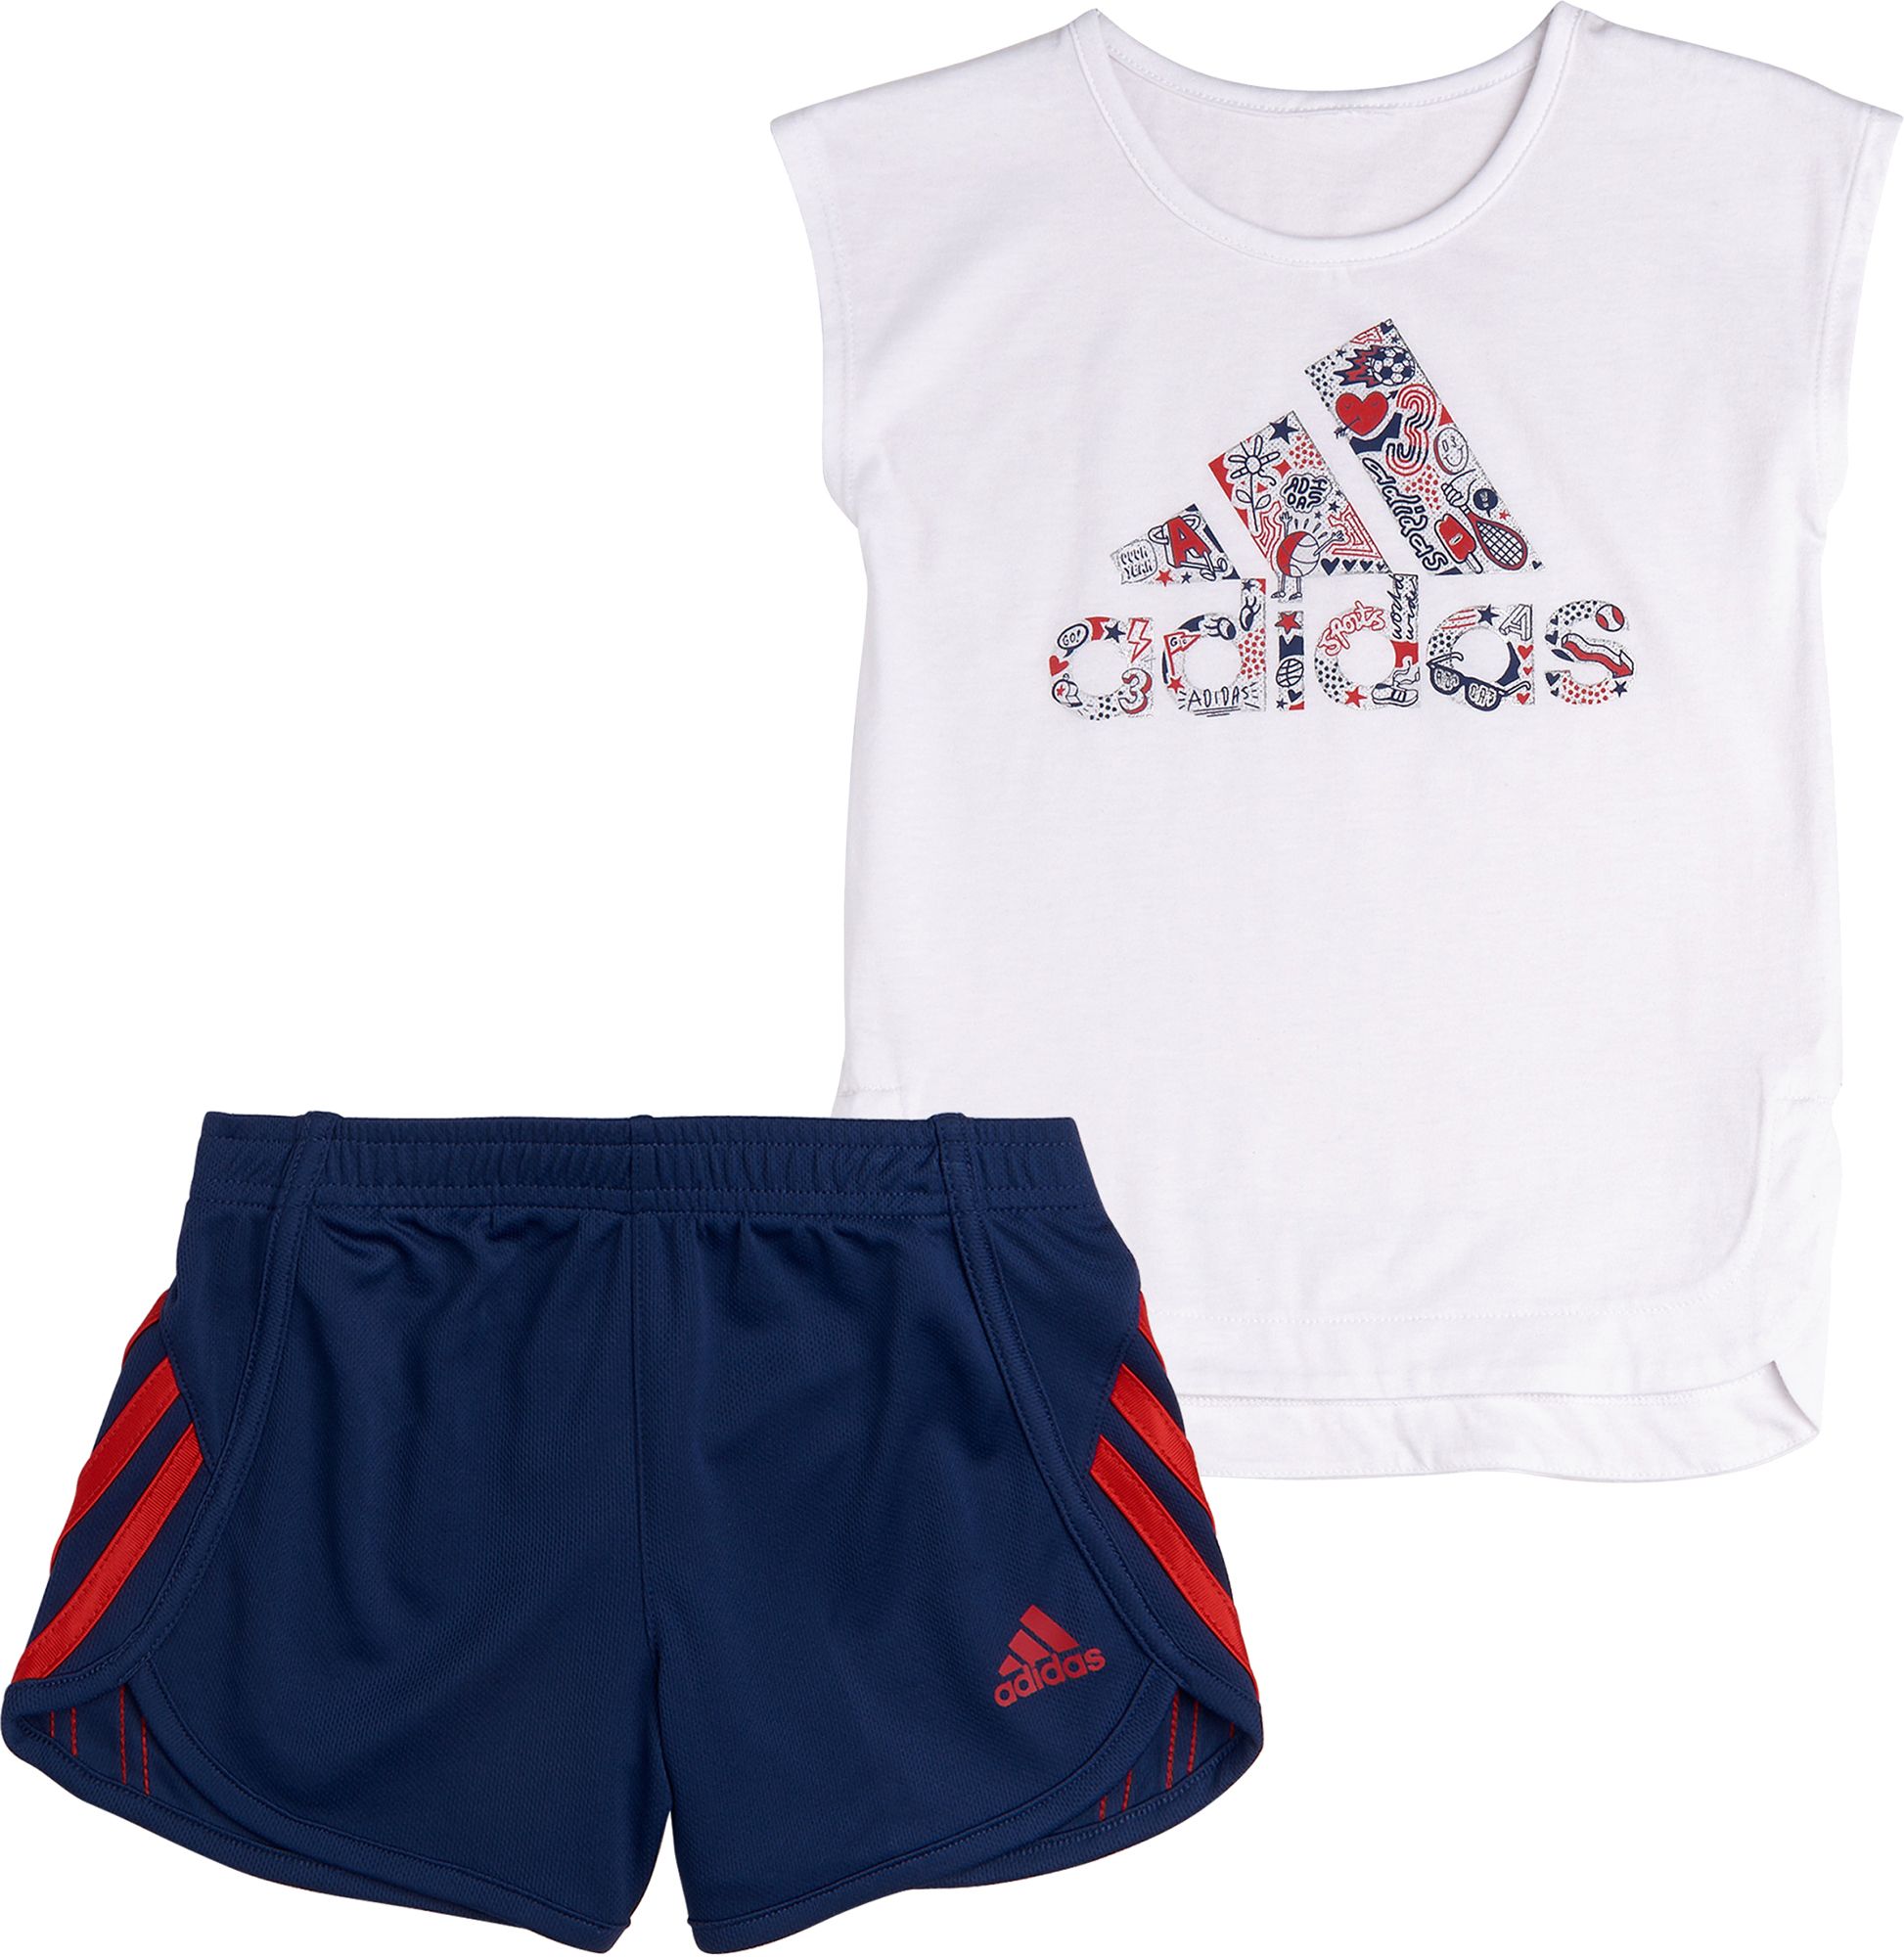 adidas toddler soccer shorts